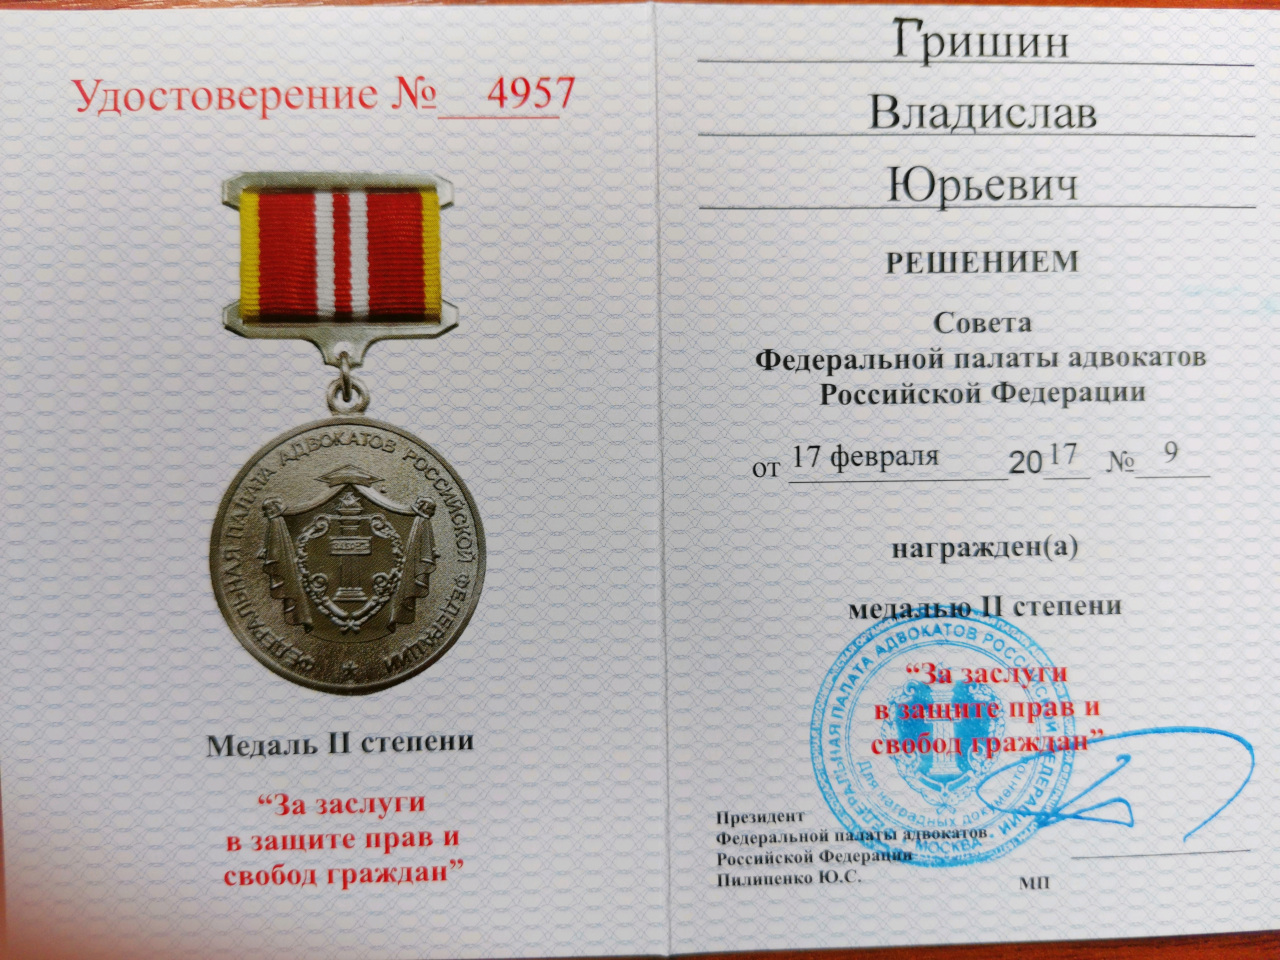 Дело в том, что в России, наконец, принят Федеральный закон «О бесплатной юридической помощи в Российской Федерации».  правовая помощь 24 на 7